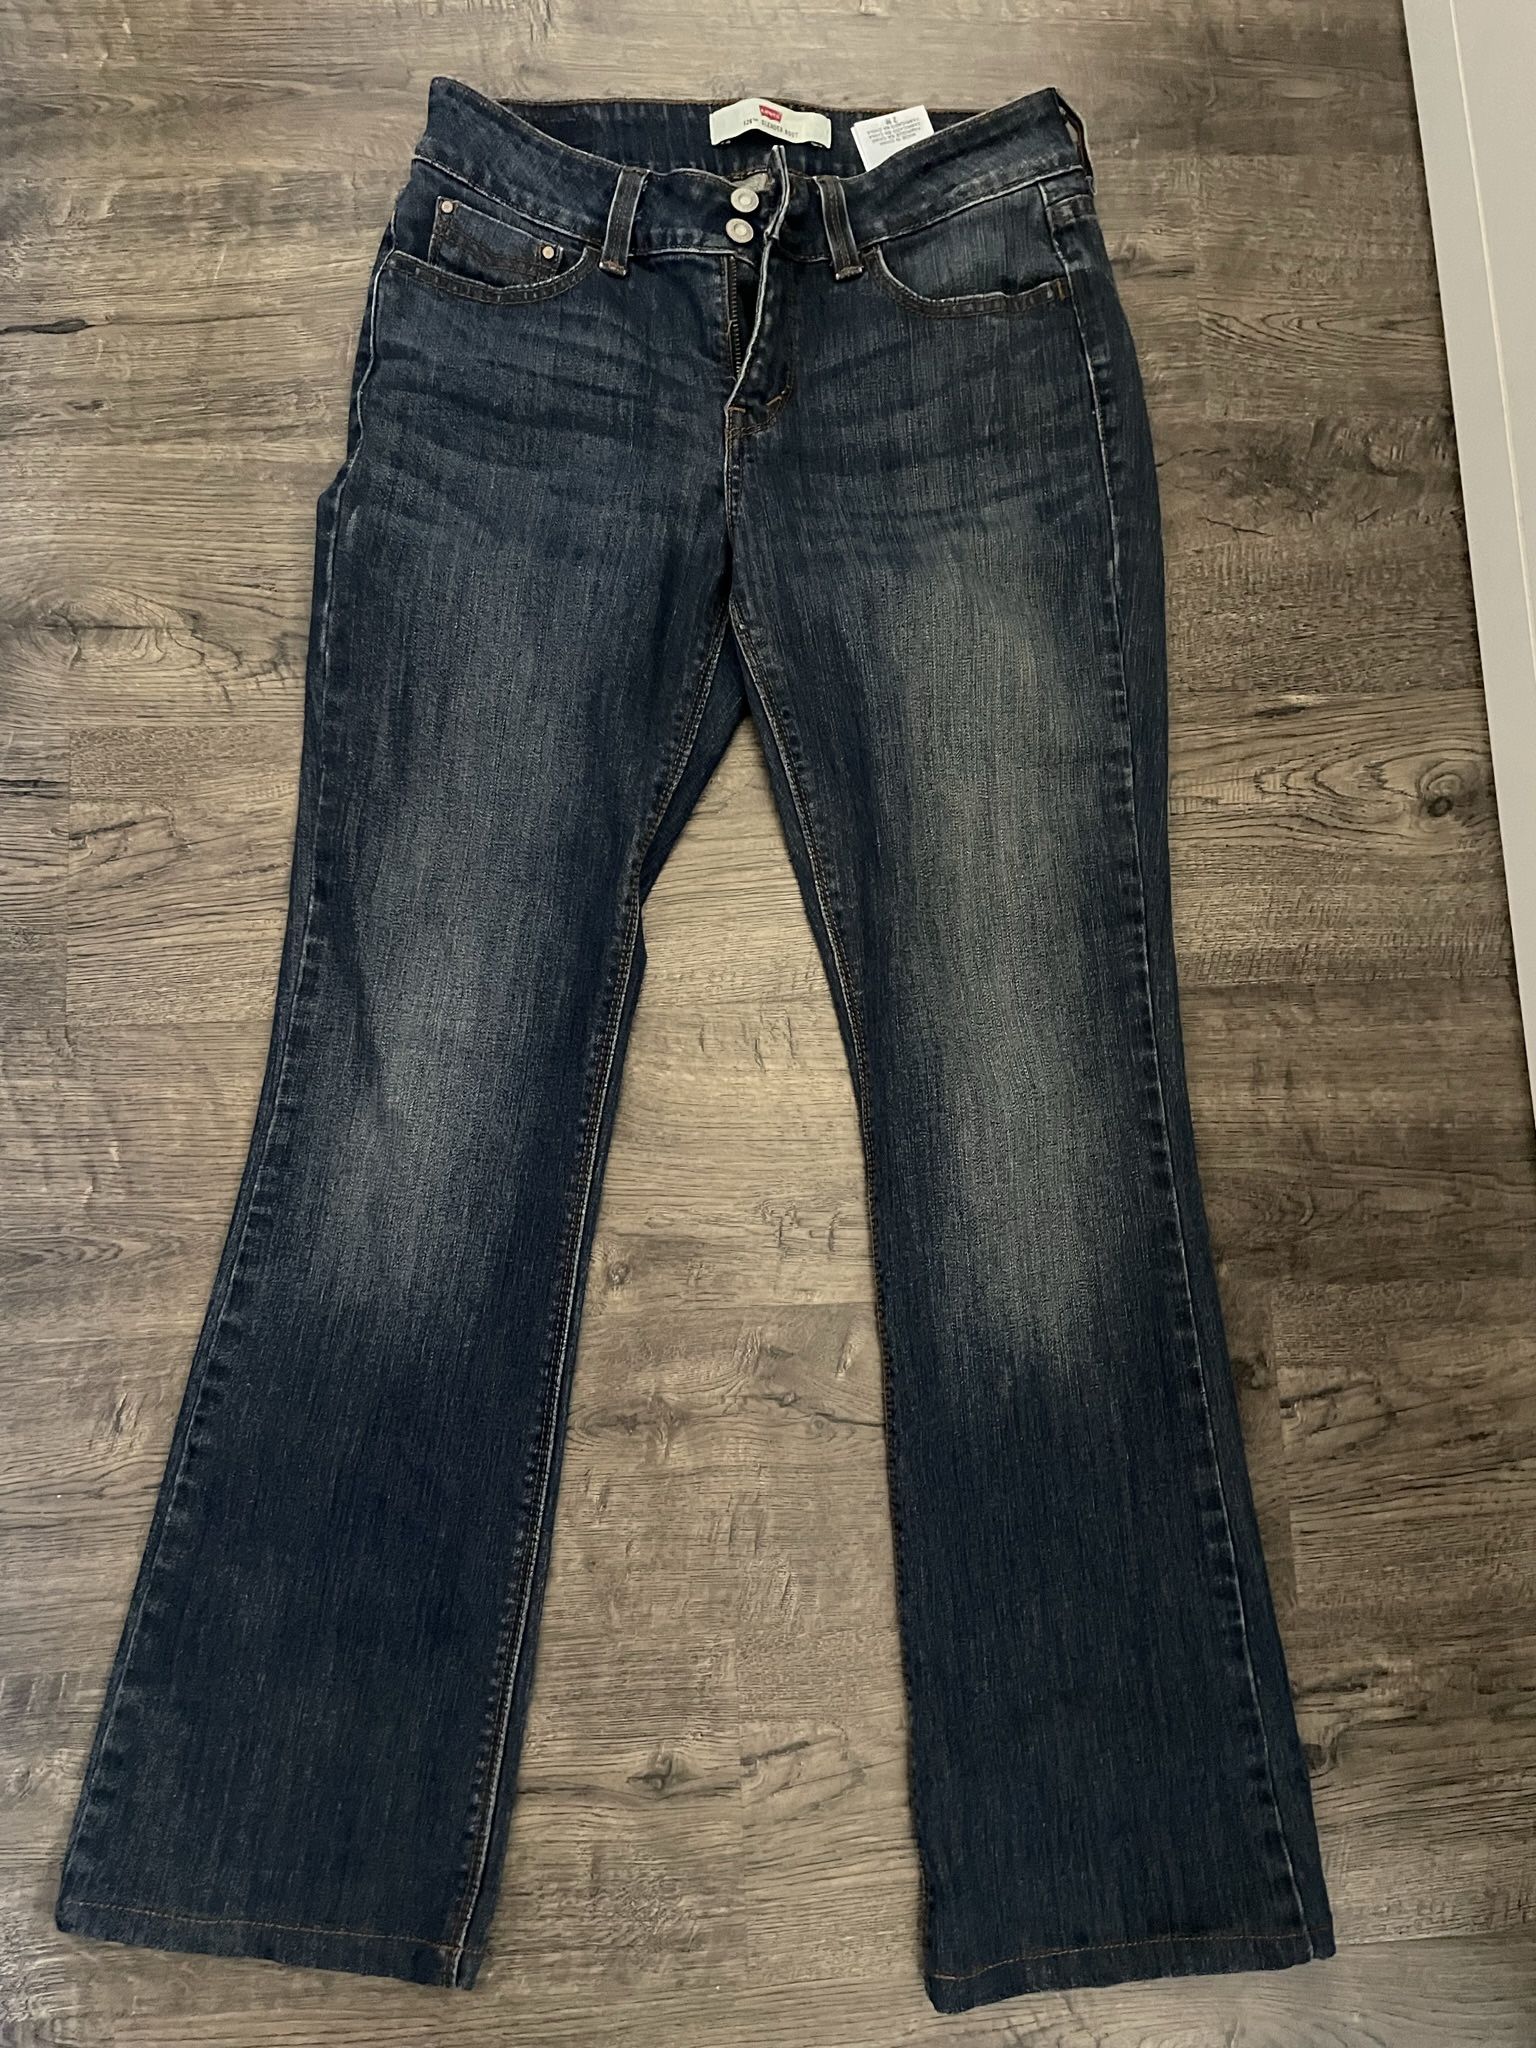 Levis Bootcut Jeans size 2